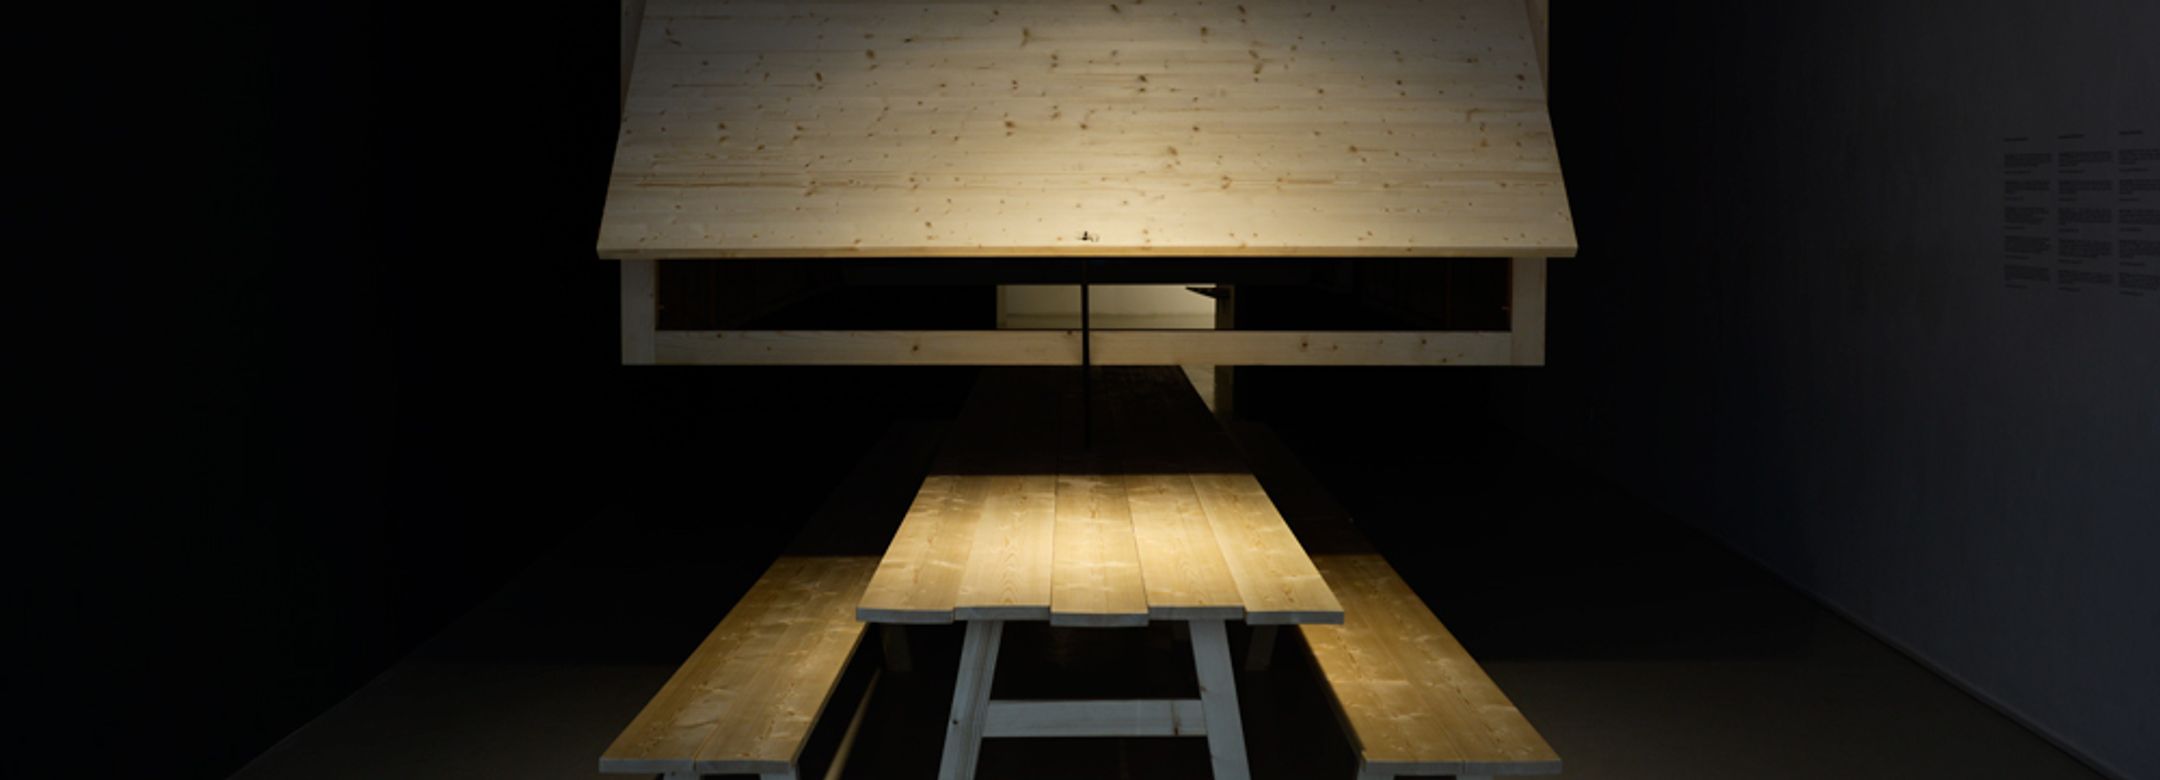 Gareth Kennedy, Die Unbequeme Wissenschaft (The Uncomfortable Science), Installation design di Harry Thaler, produced by Tischlerei & Möbelhaus Kofler, photo aneres, 2014